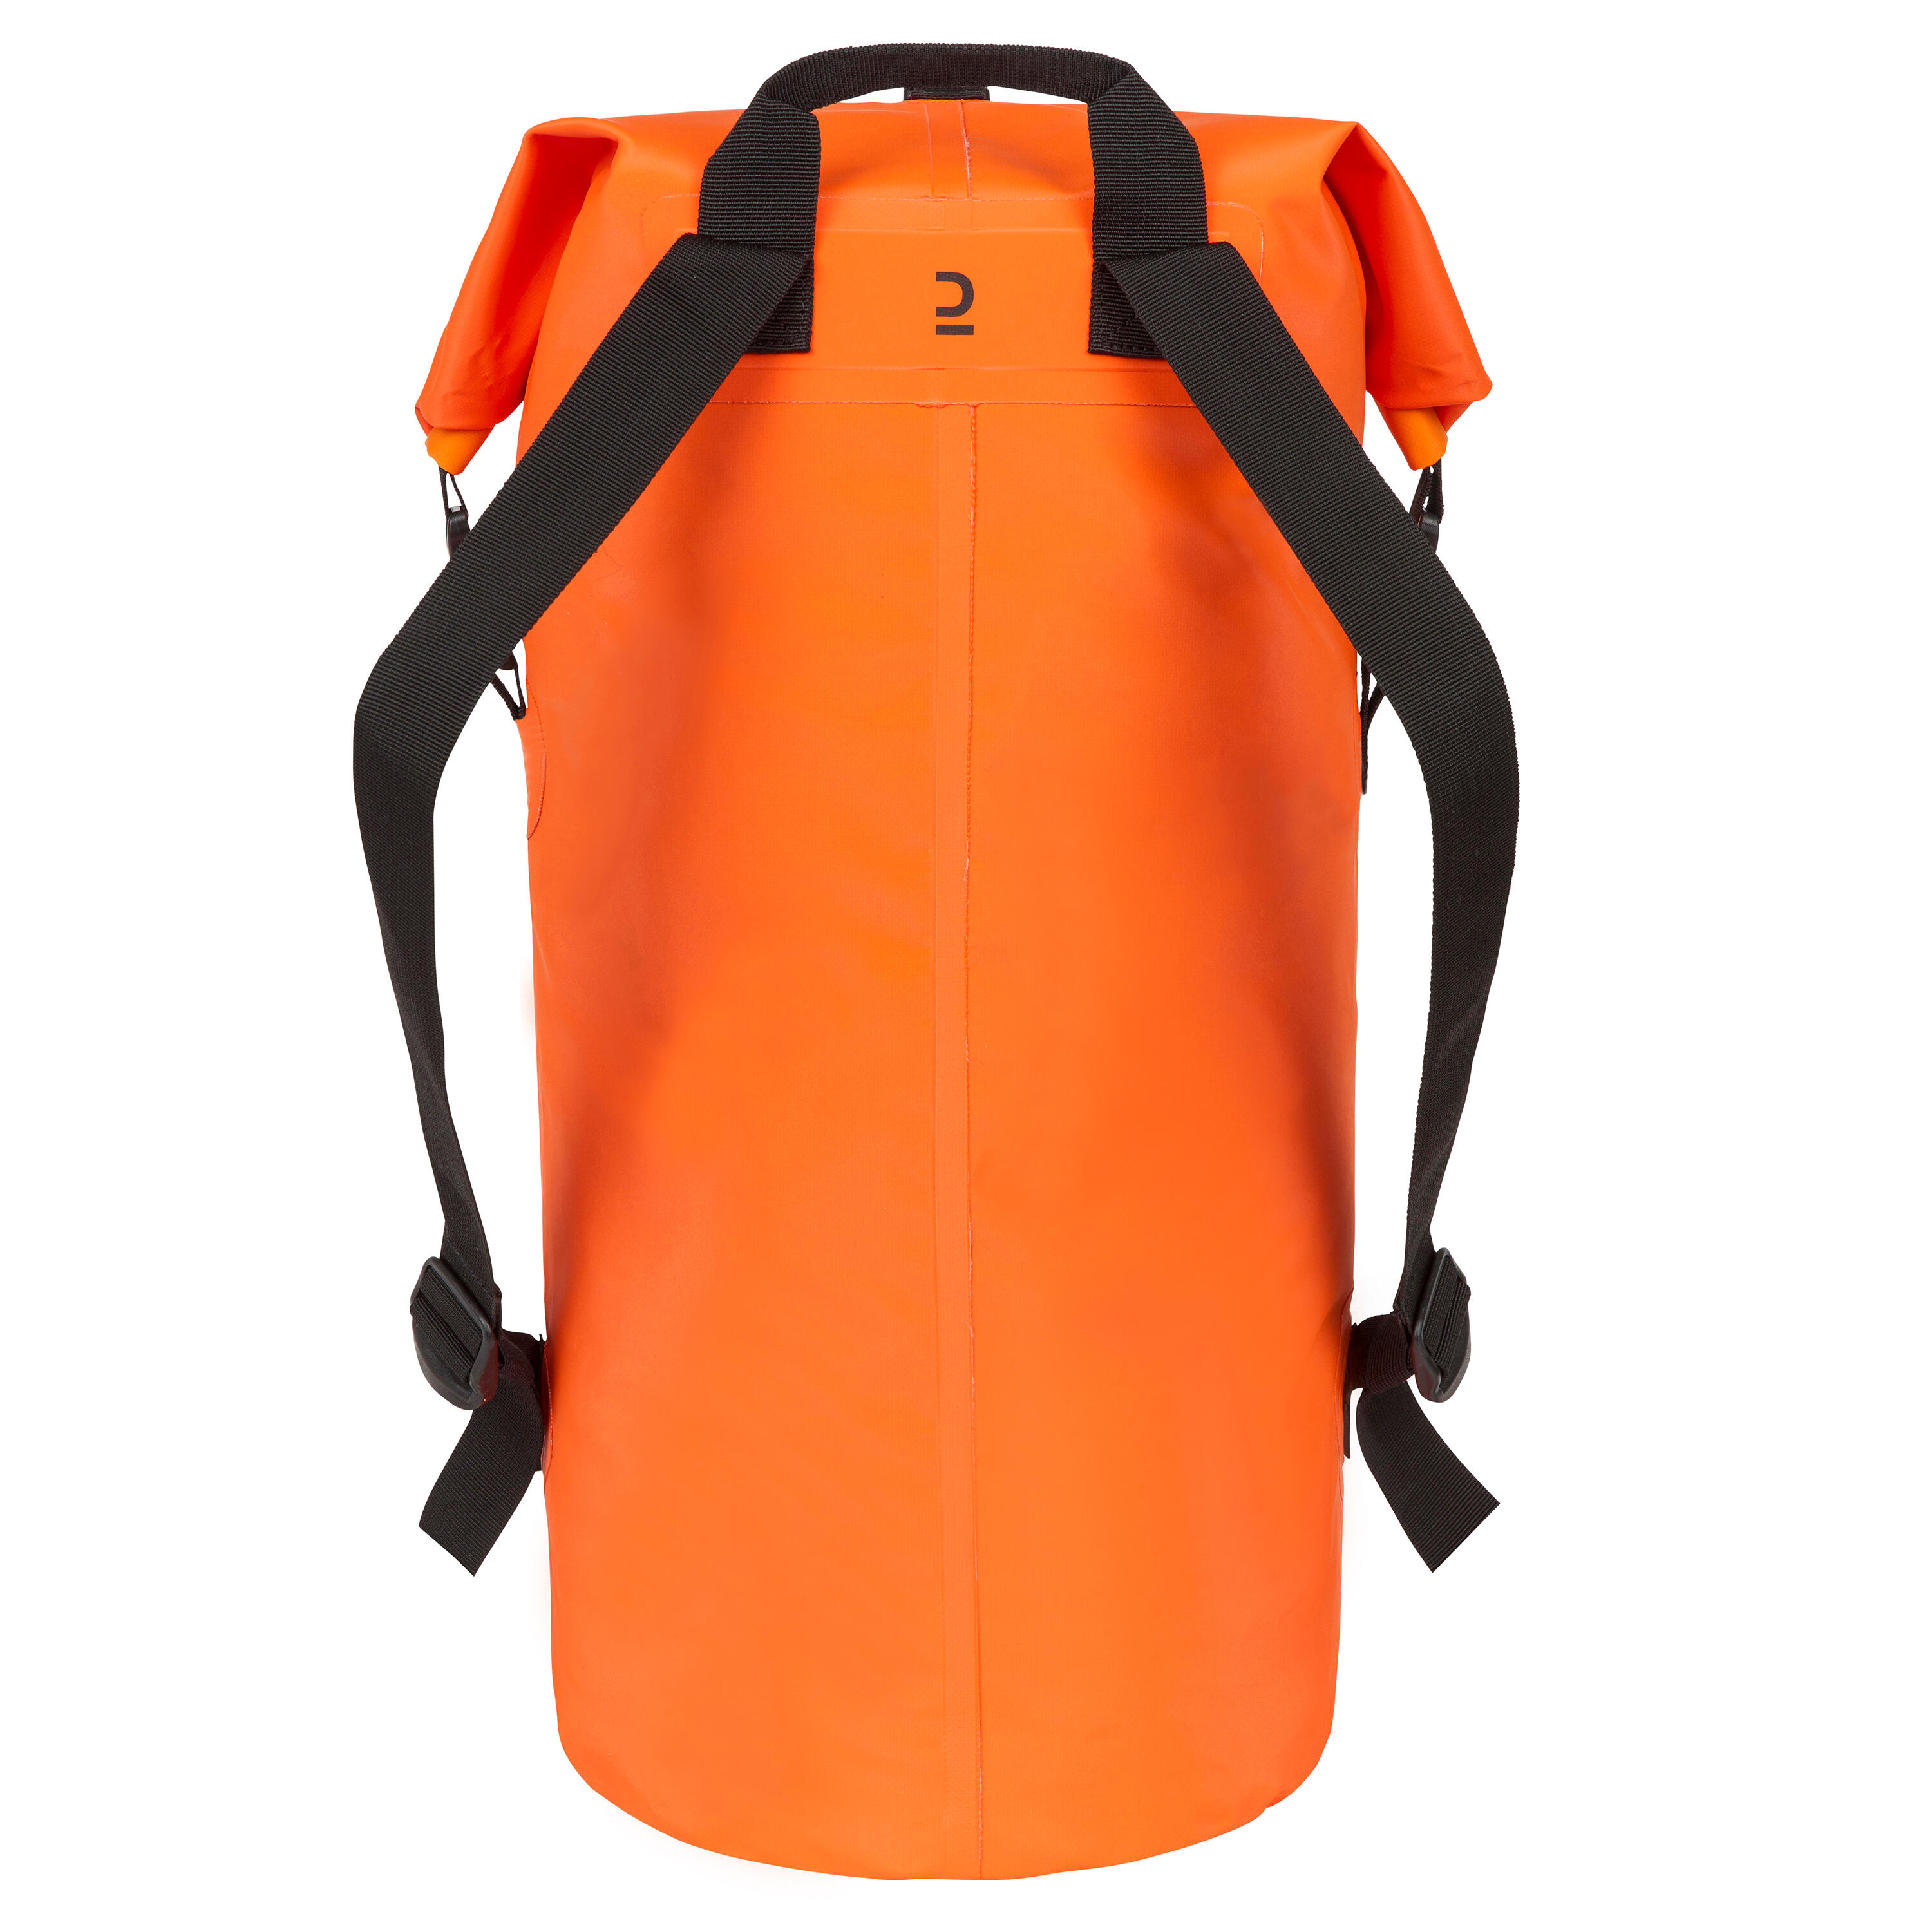 Waterproof bag IPX6 40 L orange 4/8